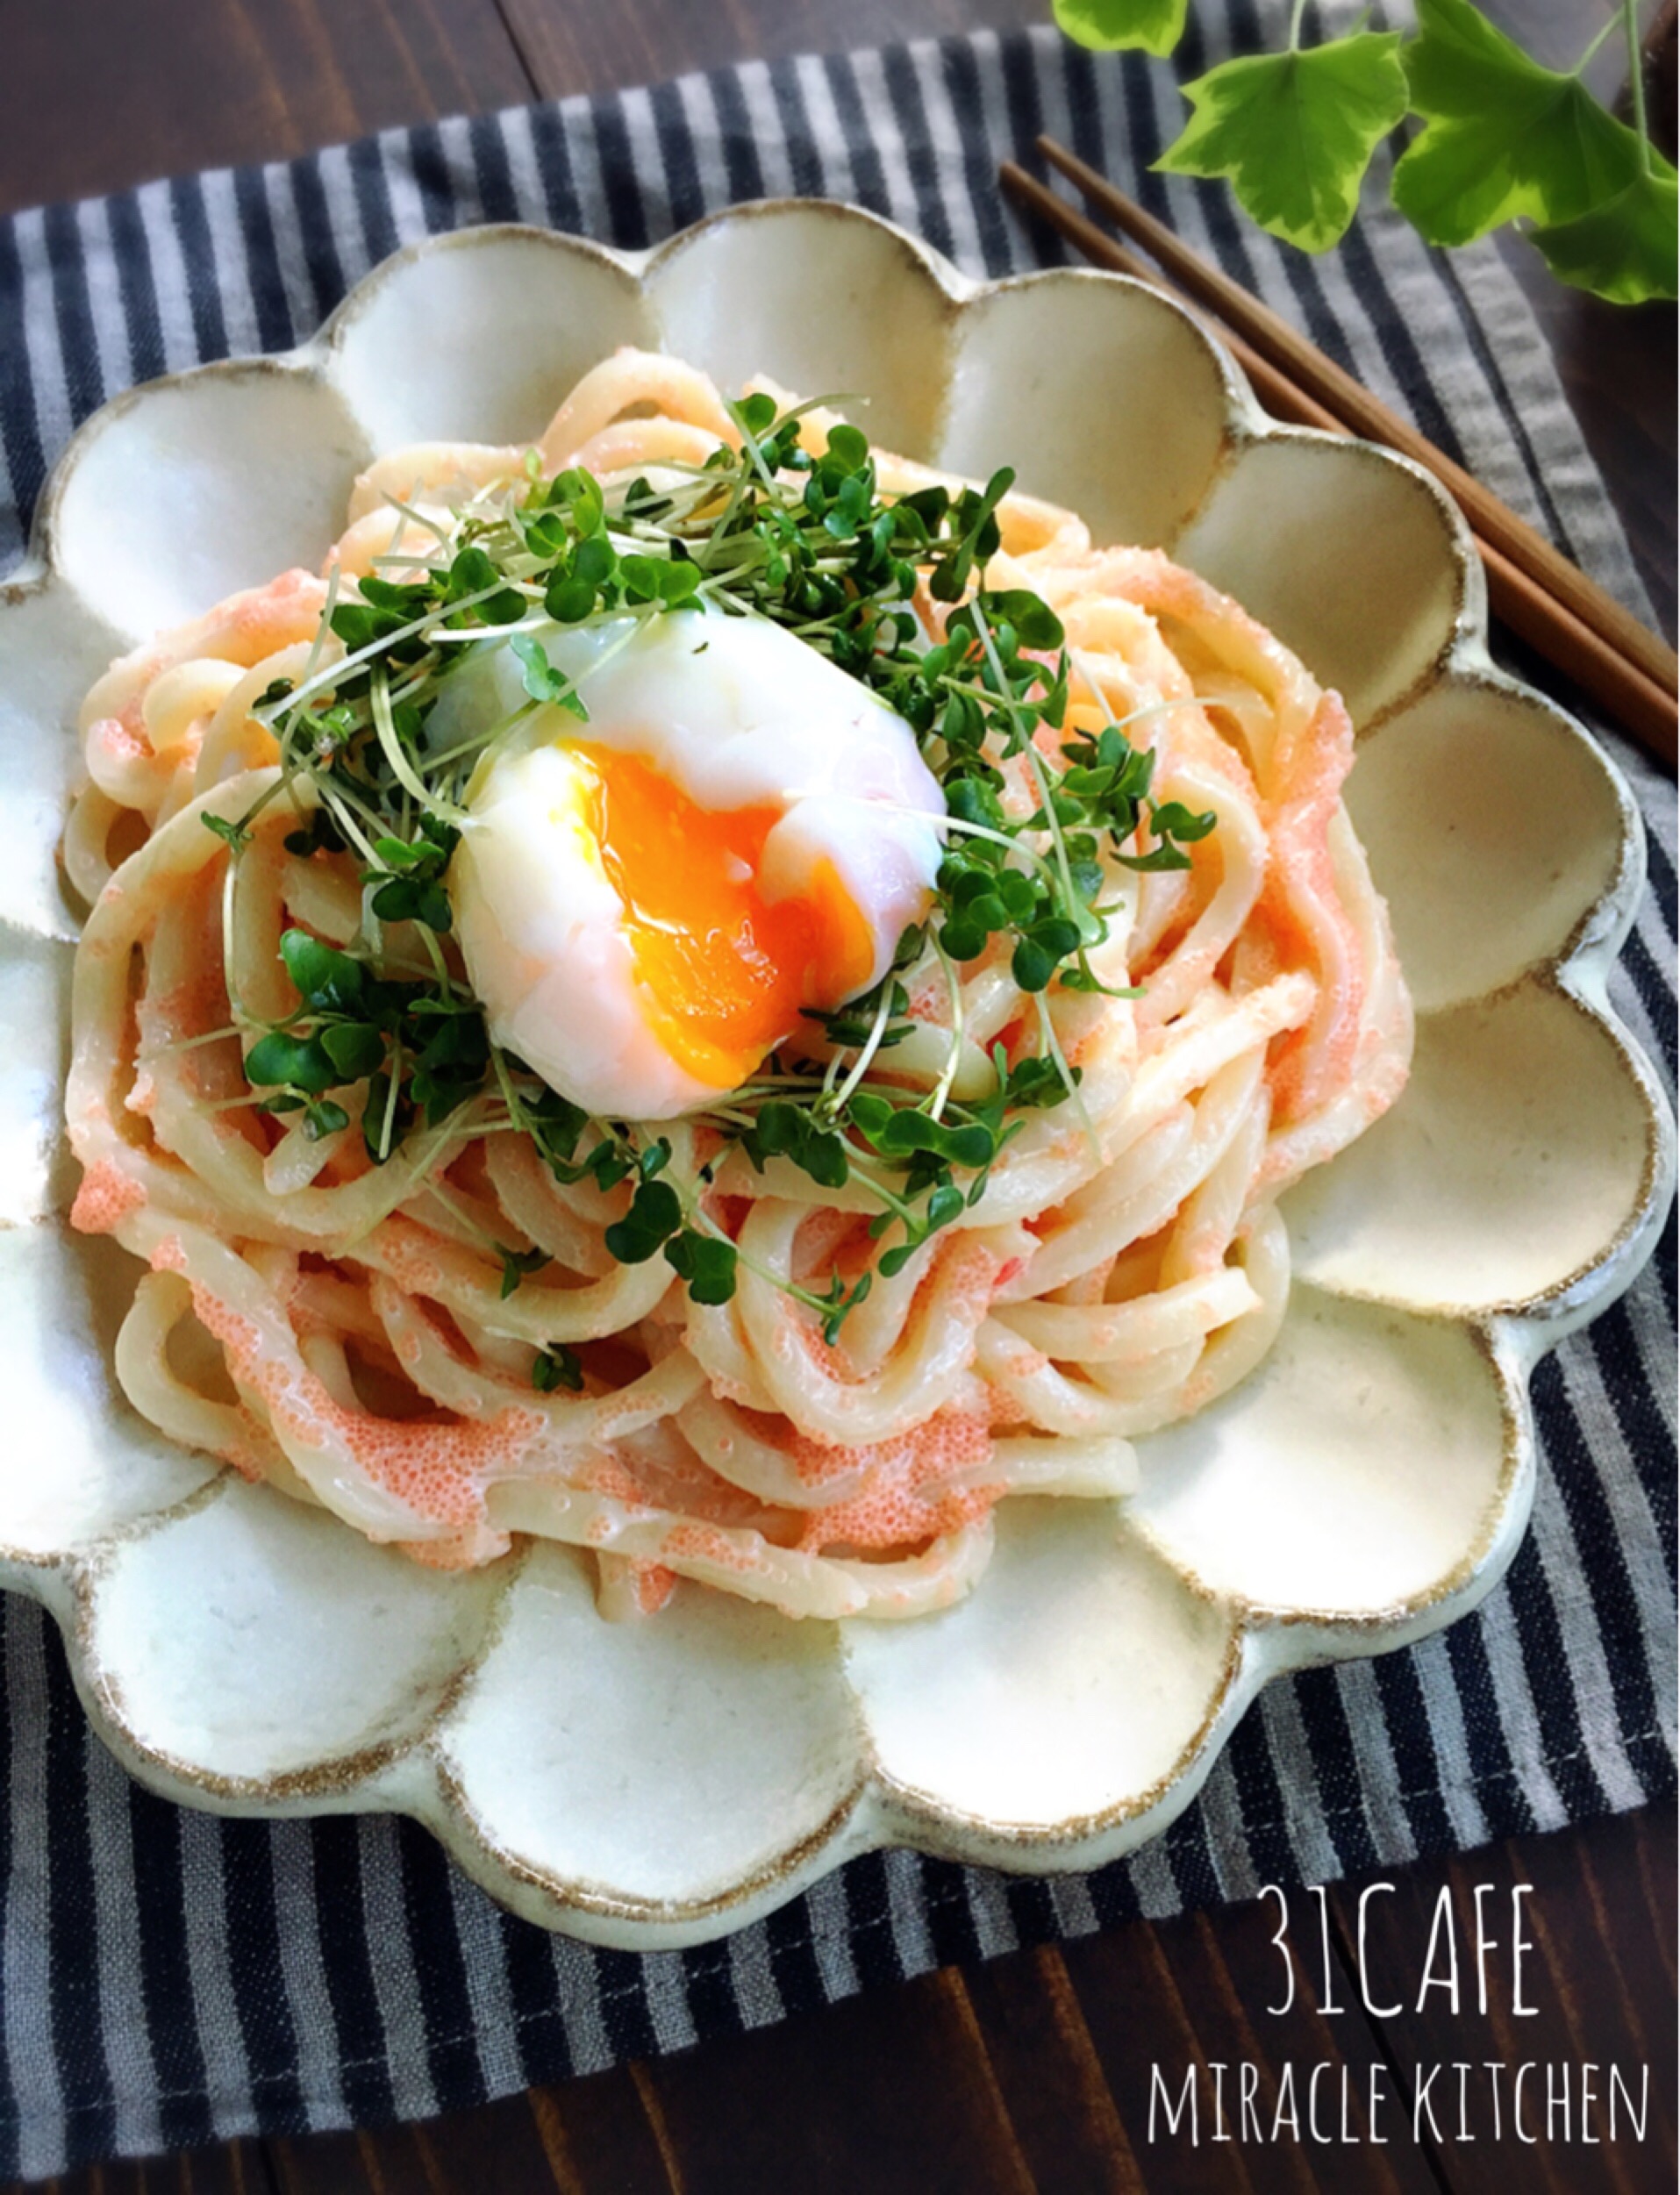 火を使わずに 超簡単冷やし明太マヨうどん 時短 節約 麺 Mizukiの簡単レシピとキラキラテーブルスタイリング 公式連載 レシピブログ